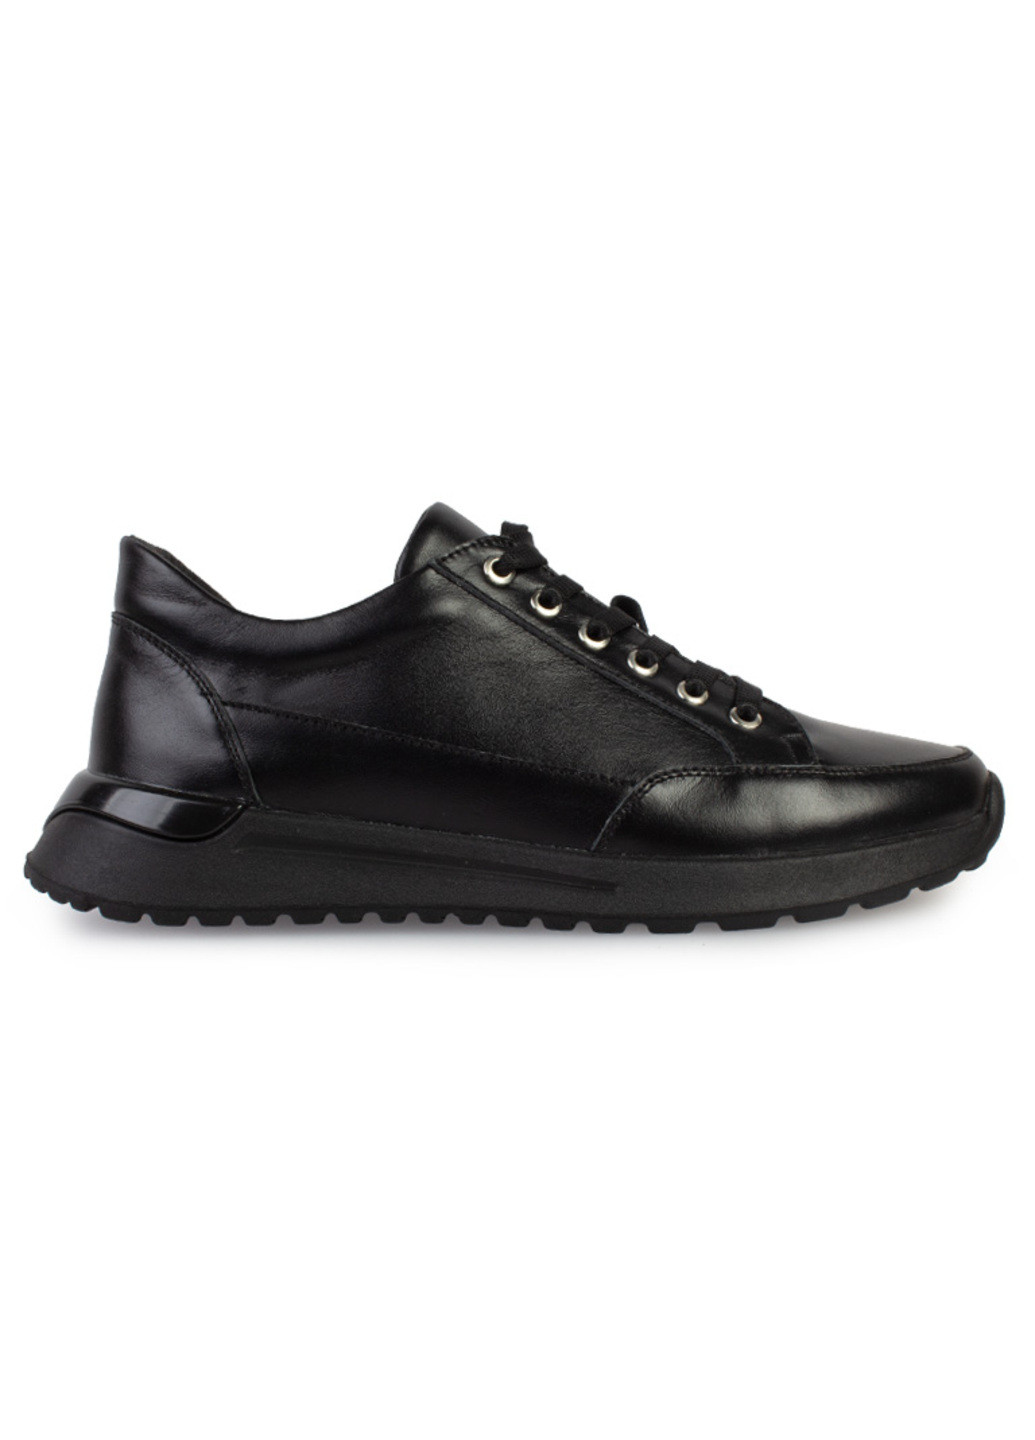 Черные демисезонные кроссовки женские бренда 8200335_(1) ModaMilano